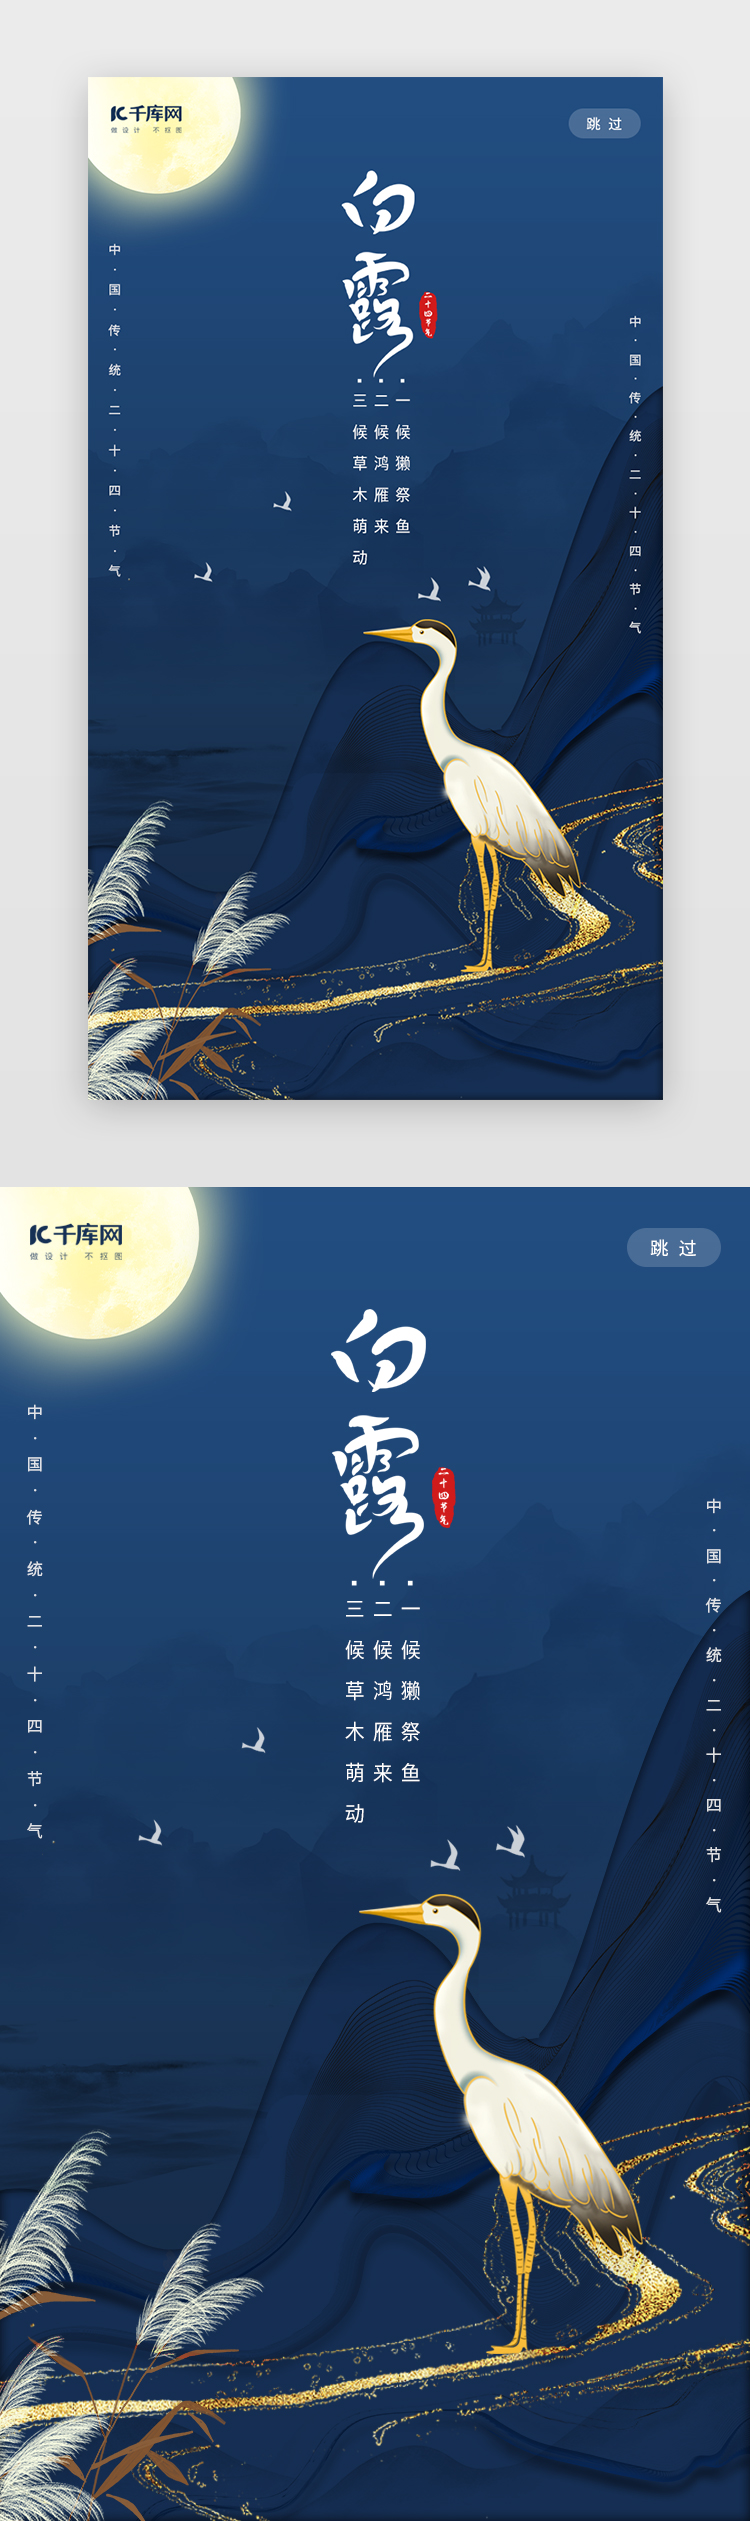 创意中国风鎏金风格白露二十节气闪屏图片